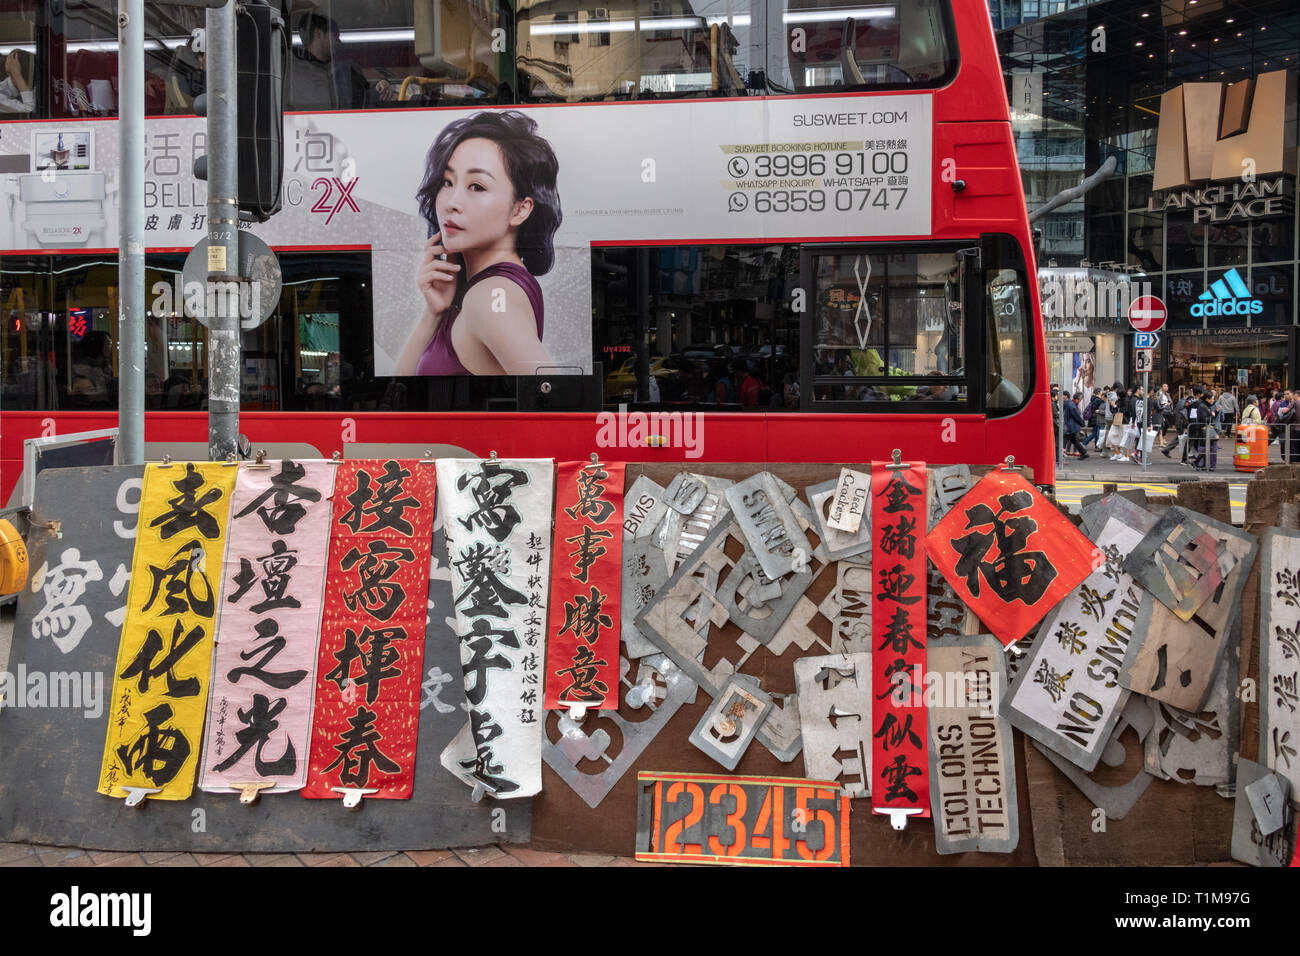 Chinese Sign Shop and Bus, Hong Kong Stock Photo